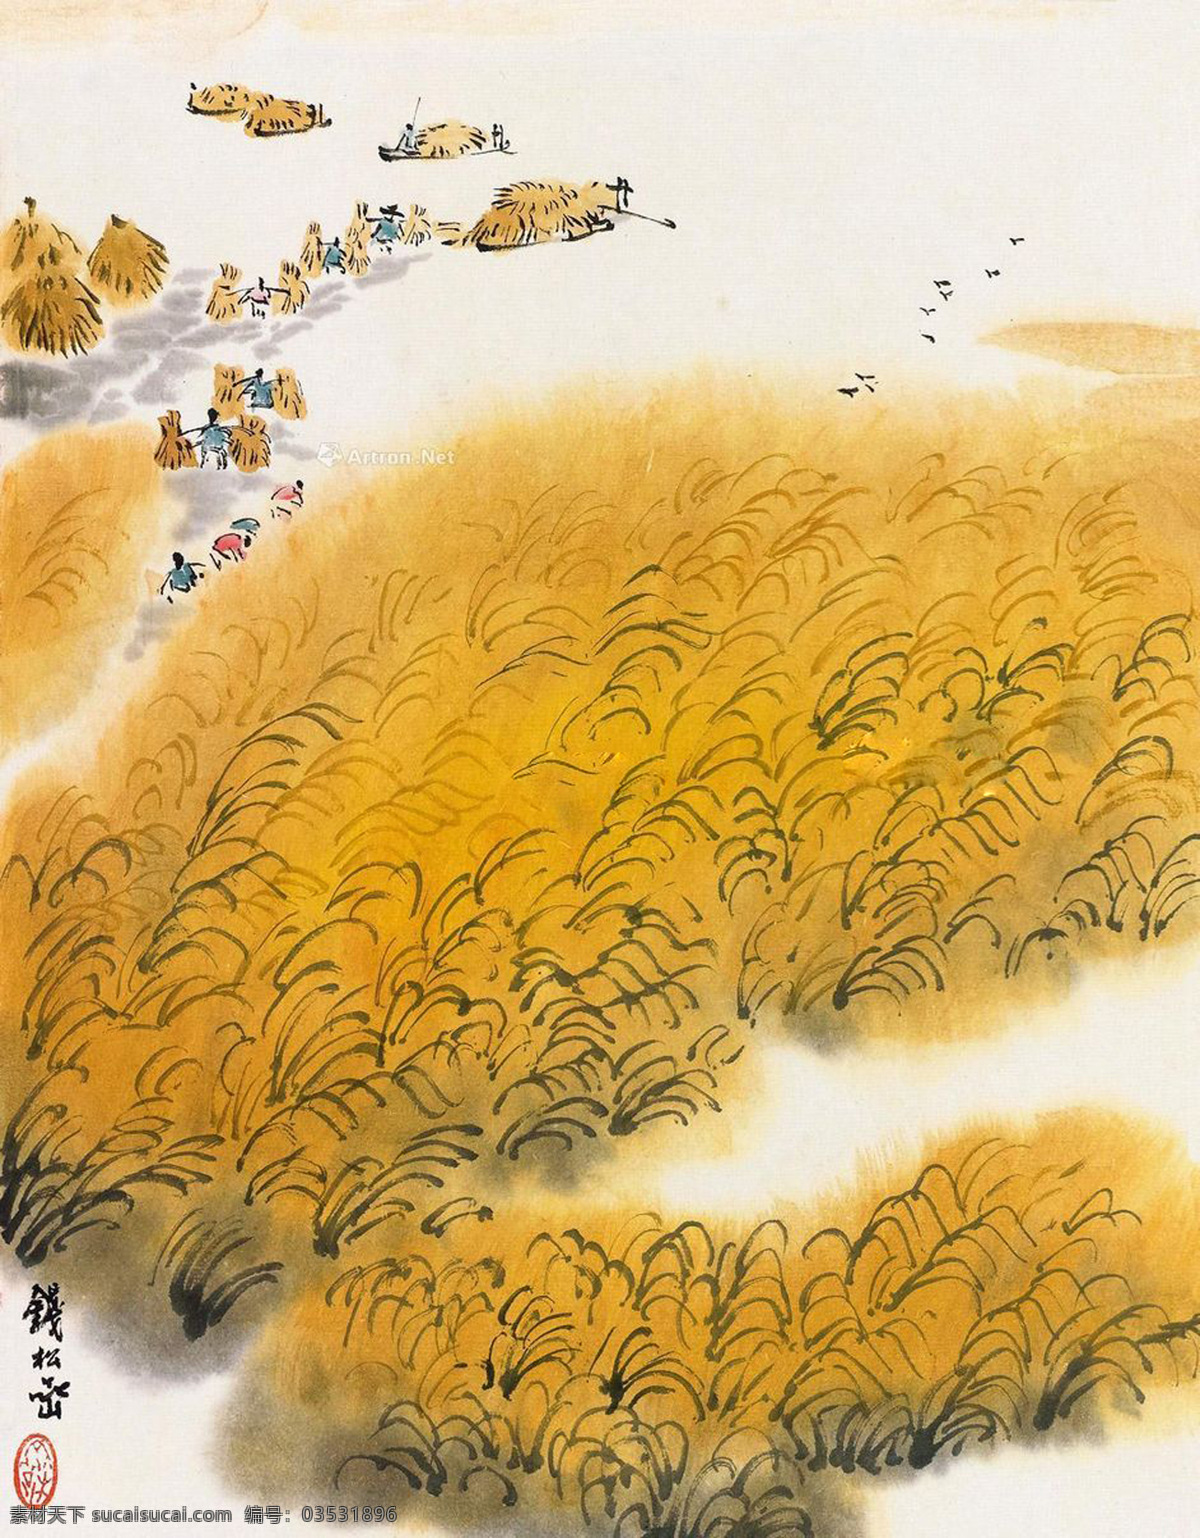 钱 松岩 收割 稻子 国画 钱松岩 收割稻子 文化艺术 绘画书法